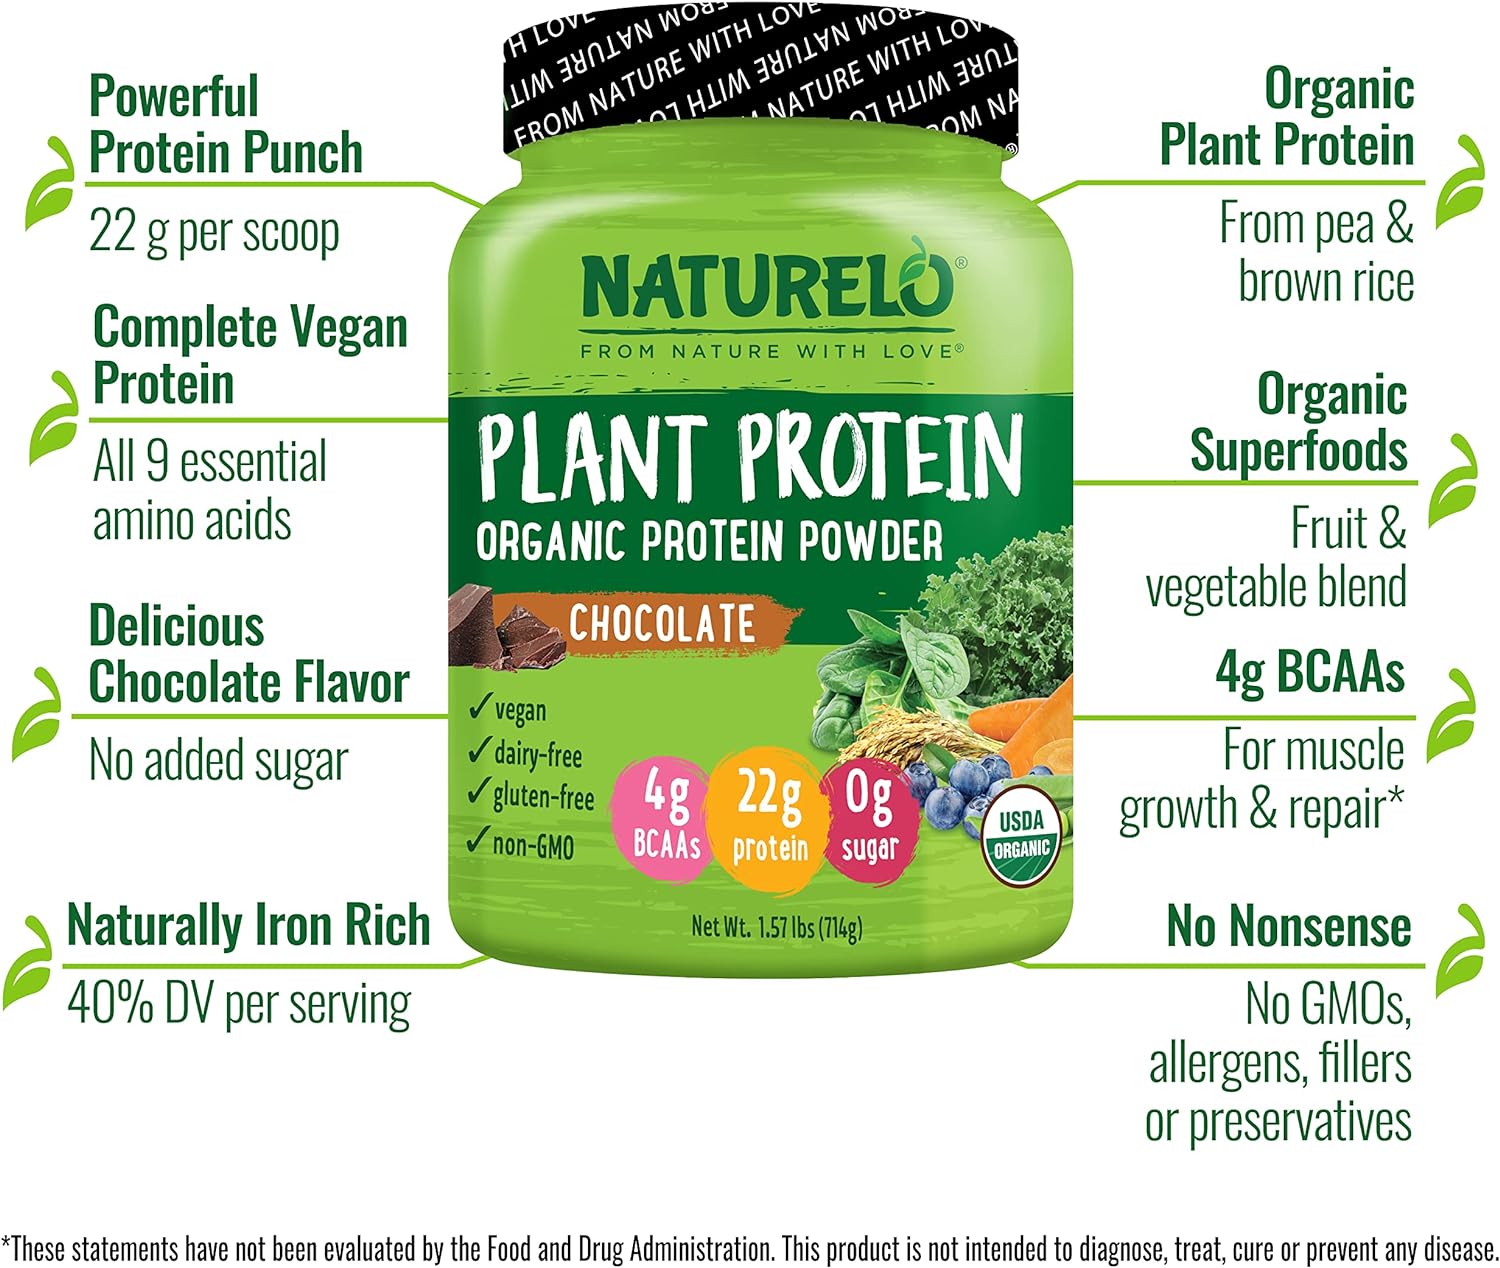 NATURELO Plant Protein Powder, Chocolate, 22g Protein - Non-GMO, Vegan